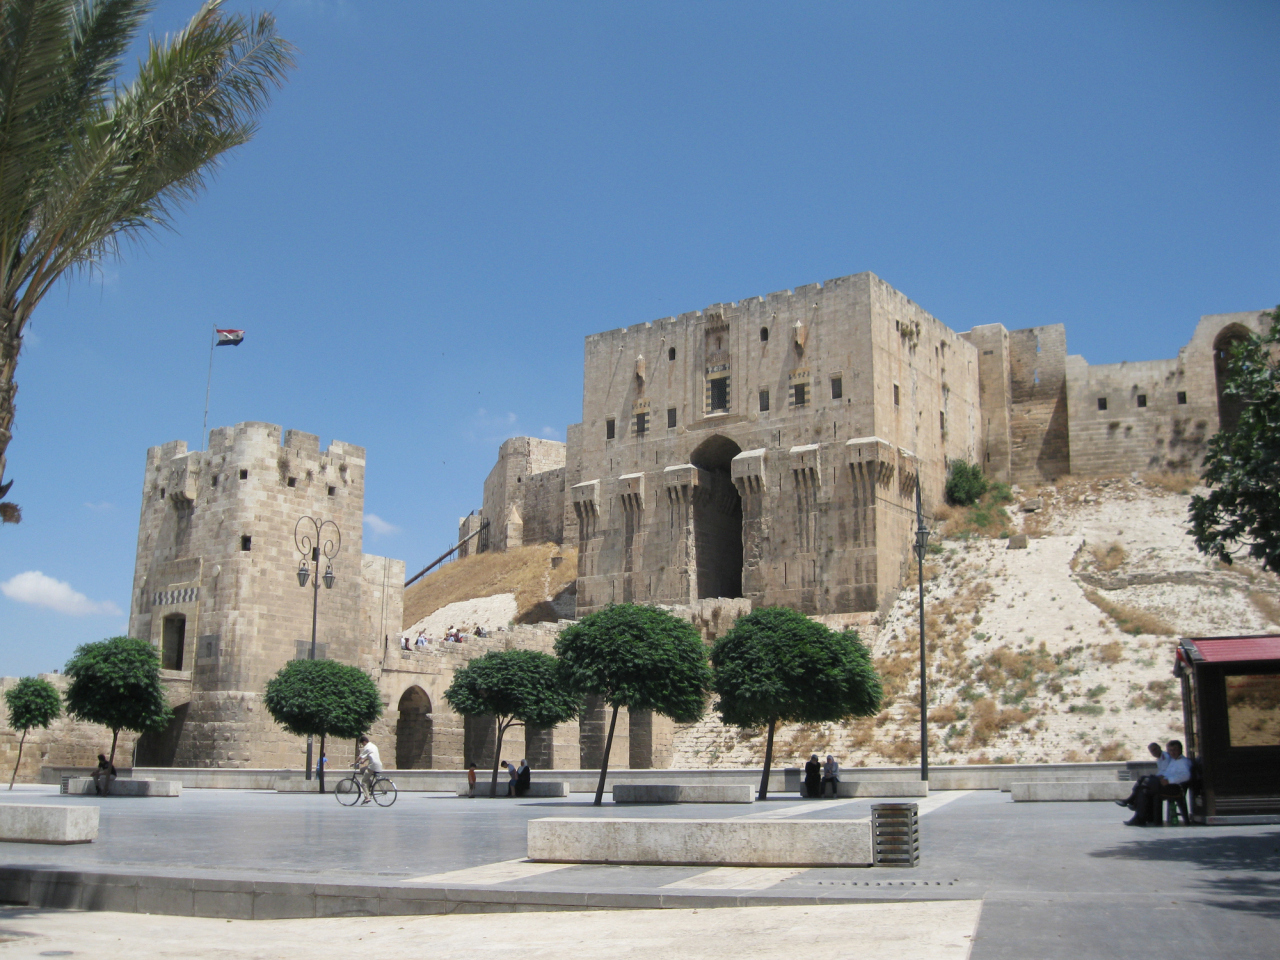 <p><strong>Земетресение в Алепо (Сирия, 1138 г.)</strong>- На 11 октомври 1138 г. силно земетресение удари град Алепо, разположен в днешна Сирия.&nbsp;Алепо е бил един от най-големите и проспериращи градове в средновековния ислямски свят, но земетресението го превръща в развалини.&nbsp;Цитаделата, джамиите, дворците и къщите се срутват, погребвайки хиляди хора под отломките.&nbsp;Точната сила на земетресението не е известна, но съвременни източници съобщават, че е било усетено до Дамаск, Багдад и Йерусалим.&nbsp;Приблизителният брой на жертвите варира от 230 000 до 250 000, което го прави едно от най-смъртоносните земетресения в историята.</p>